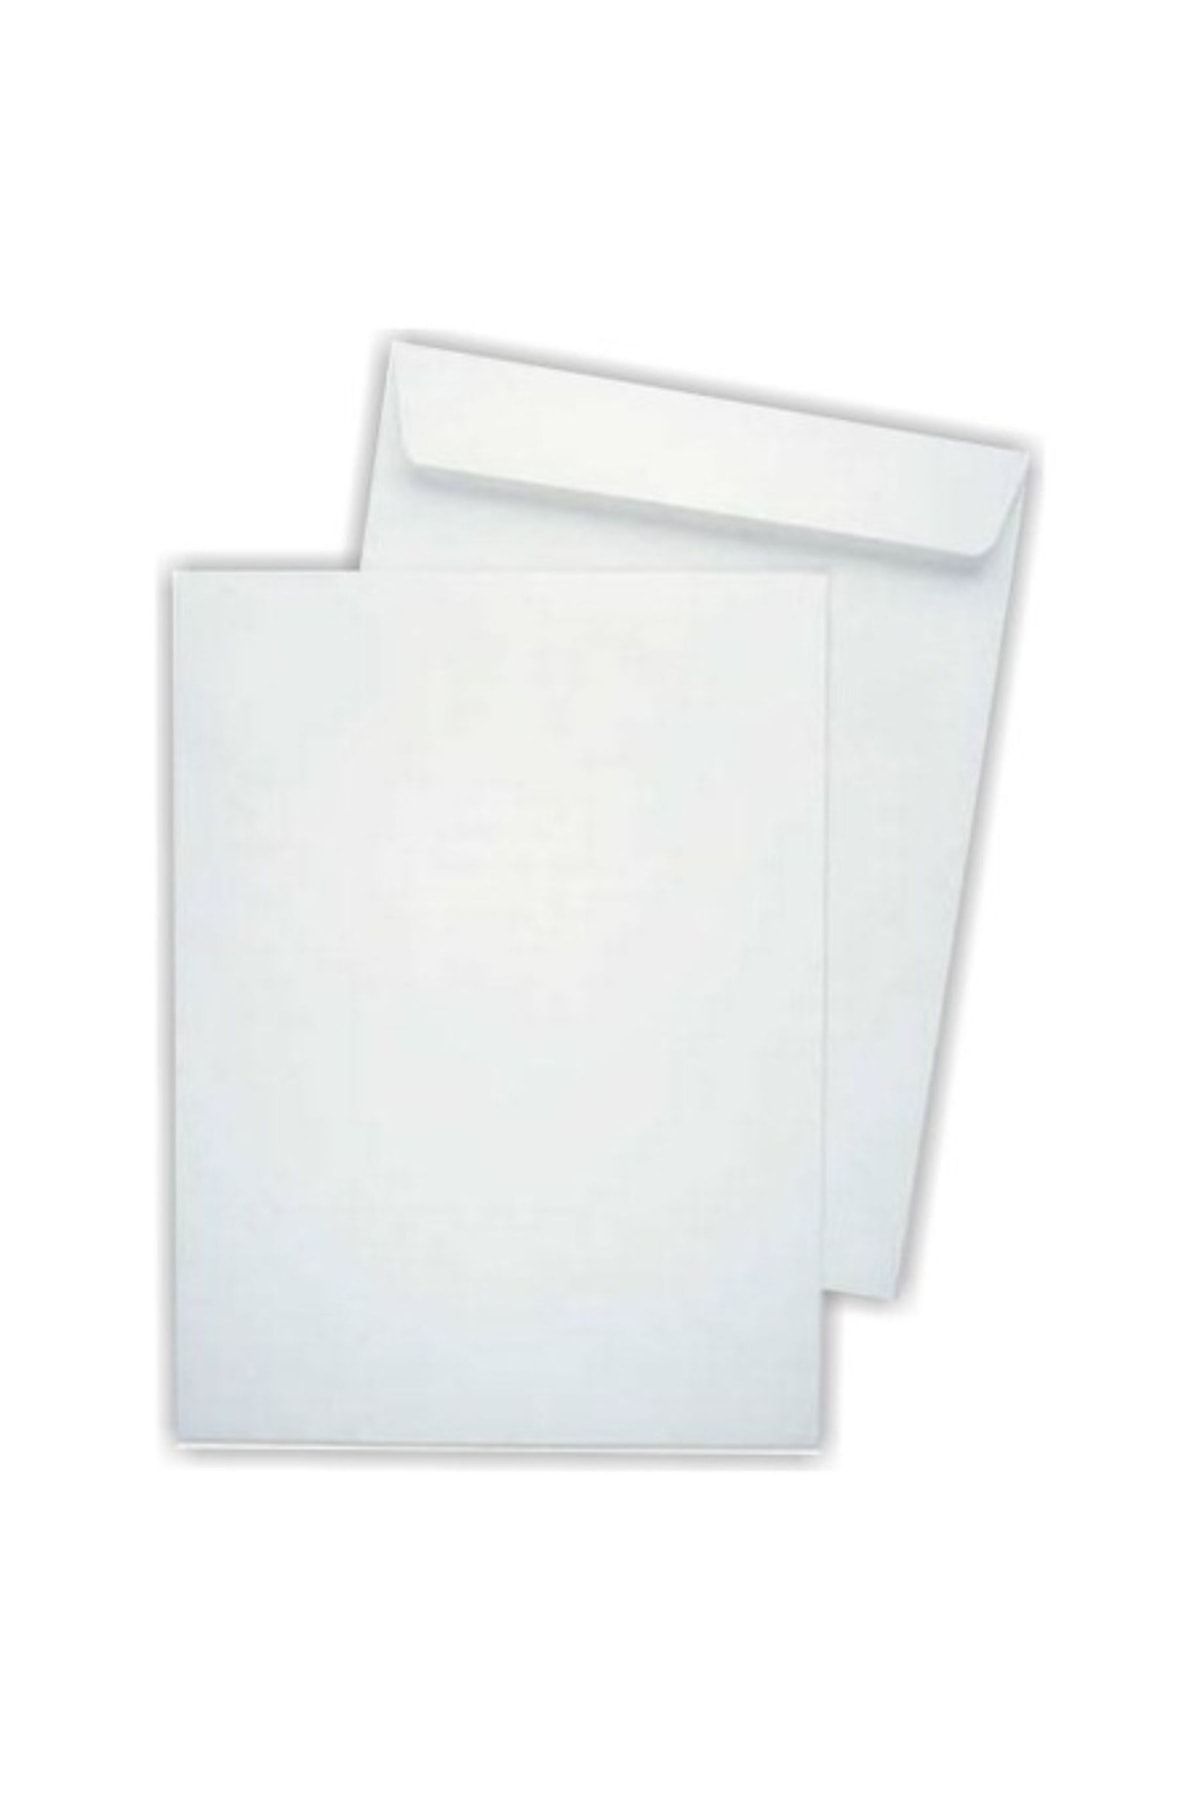 ATILIM Beyaz Torba Zarf 1.hamur 16*23 110 Gr. (silikon Bantlı) 100 Adet